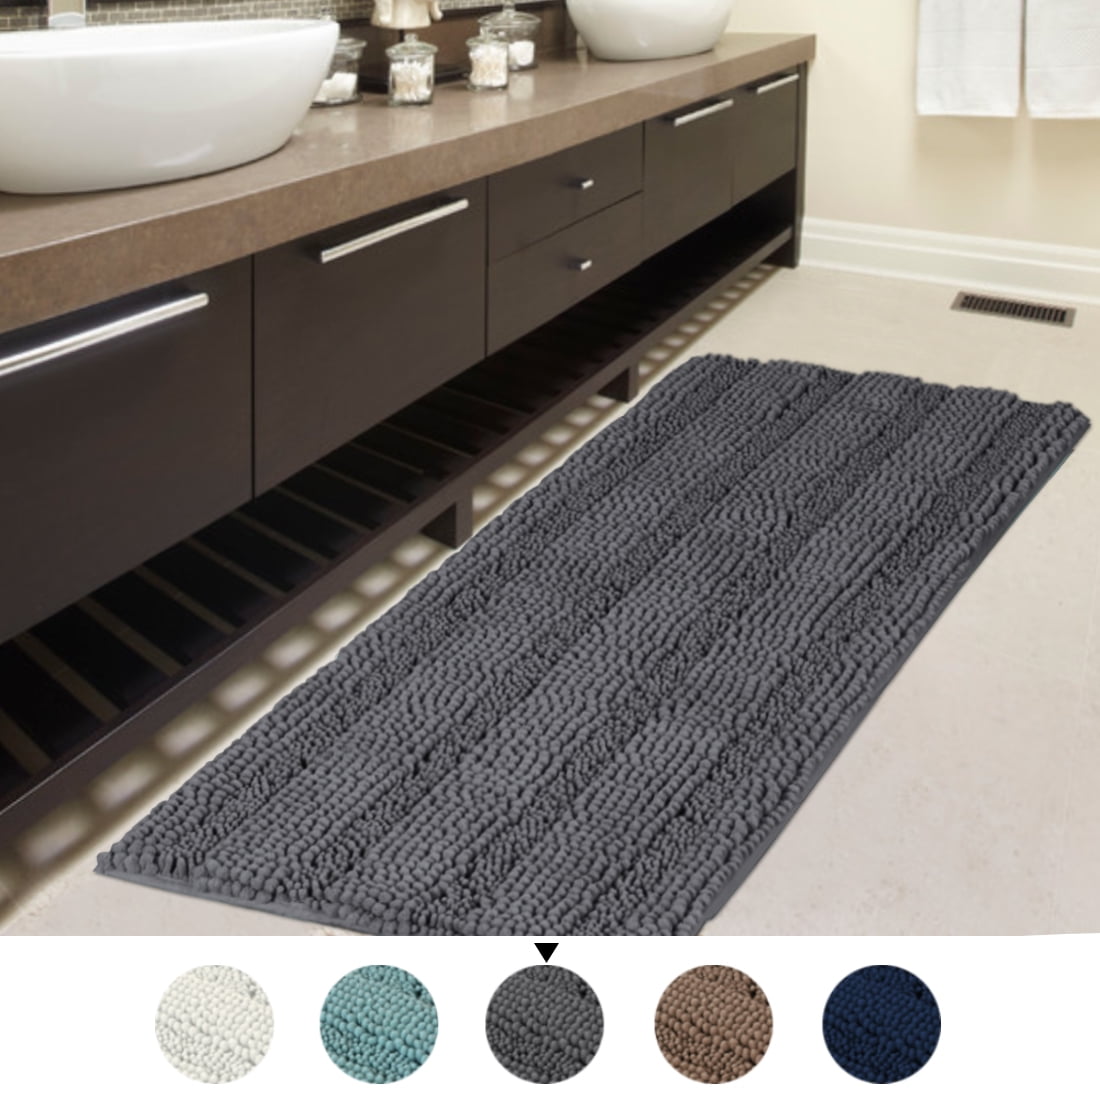 2 x Non Slip Bathroom Mat Water Absorbent Carpet Kitchen Bedroom Rug Floor Door 